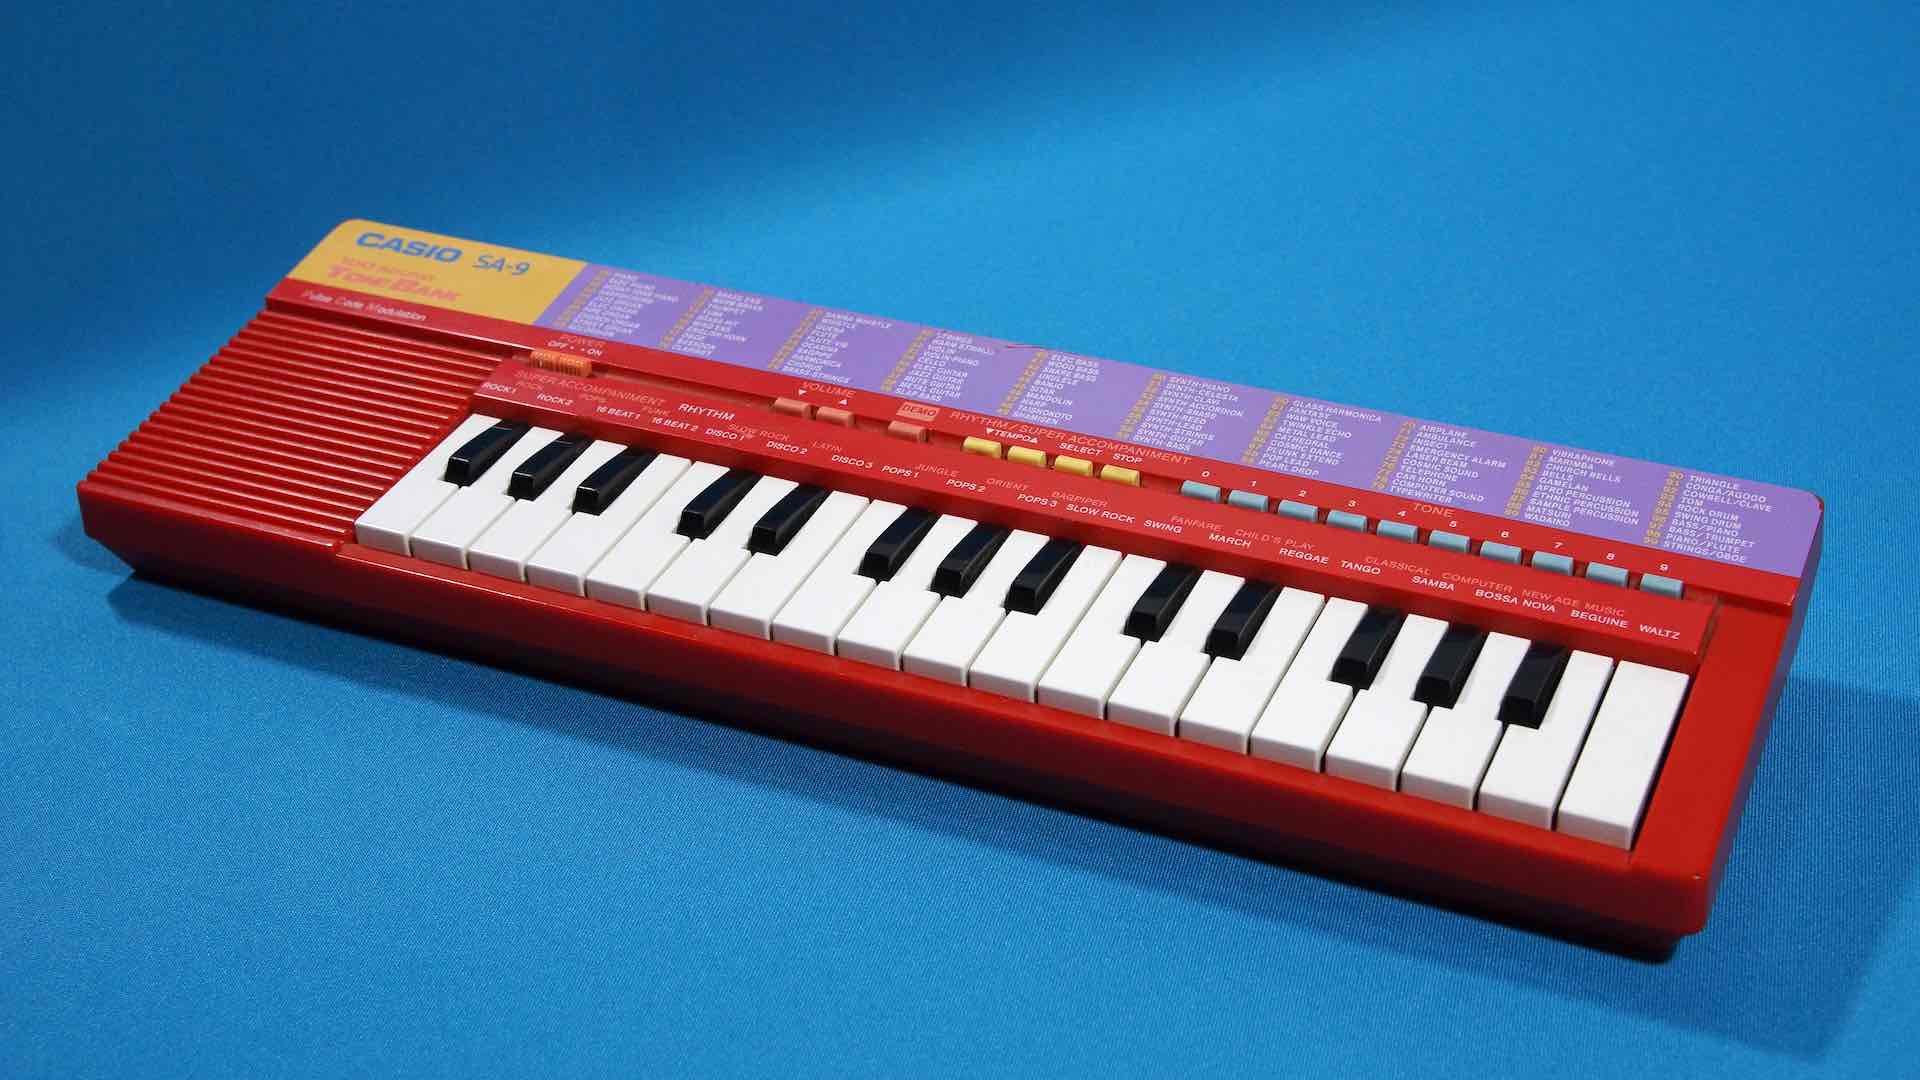 Casio SA-9 keyboard